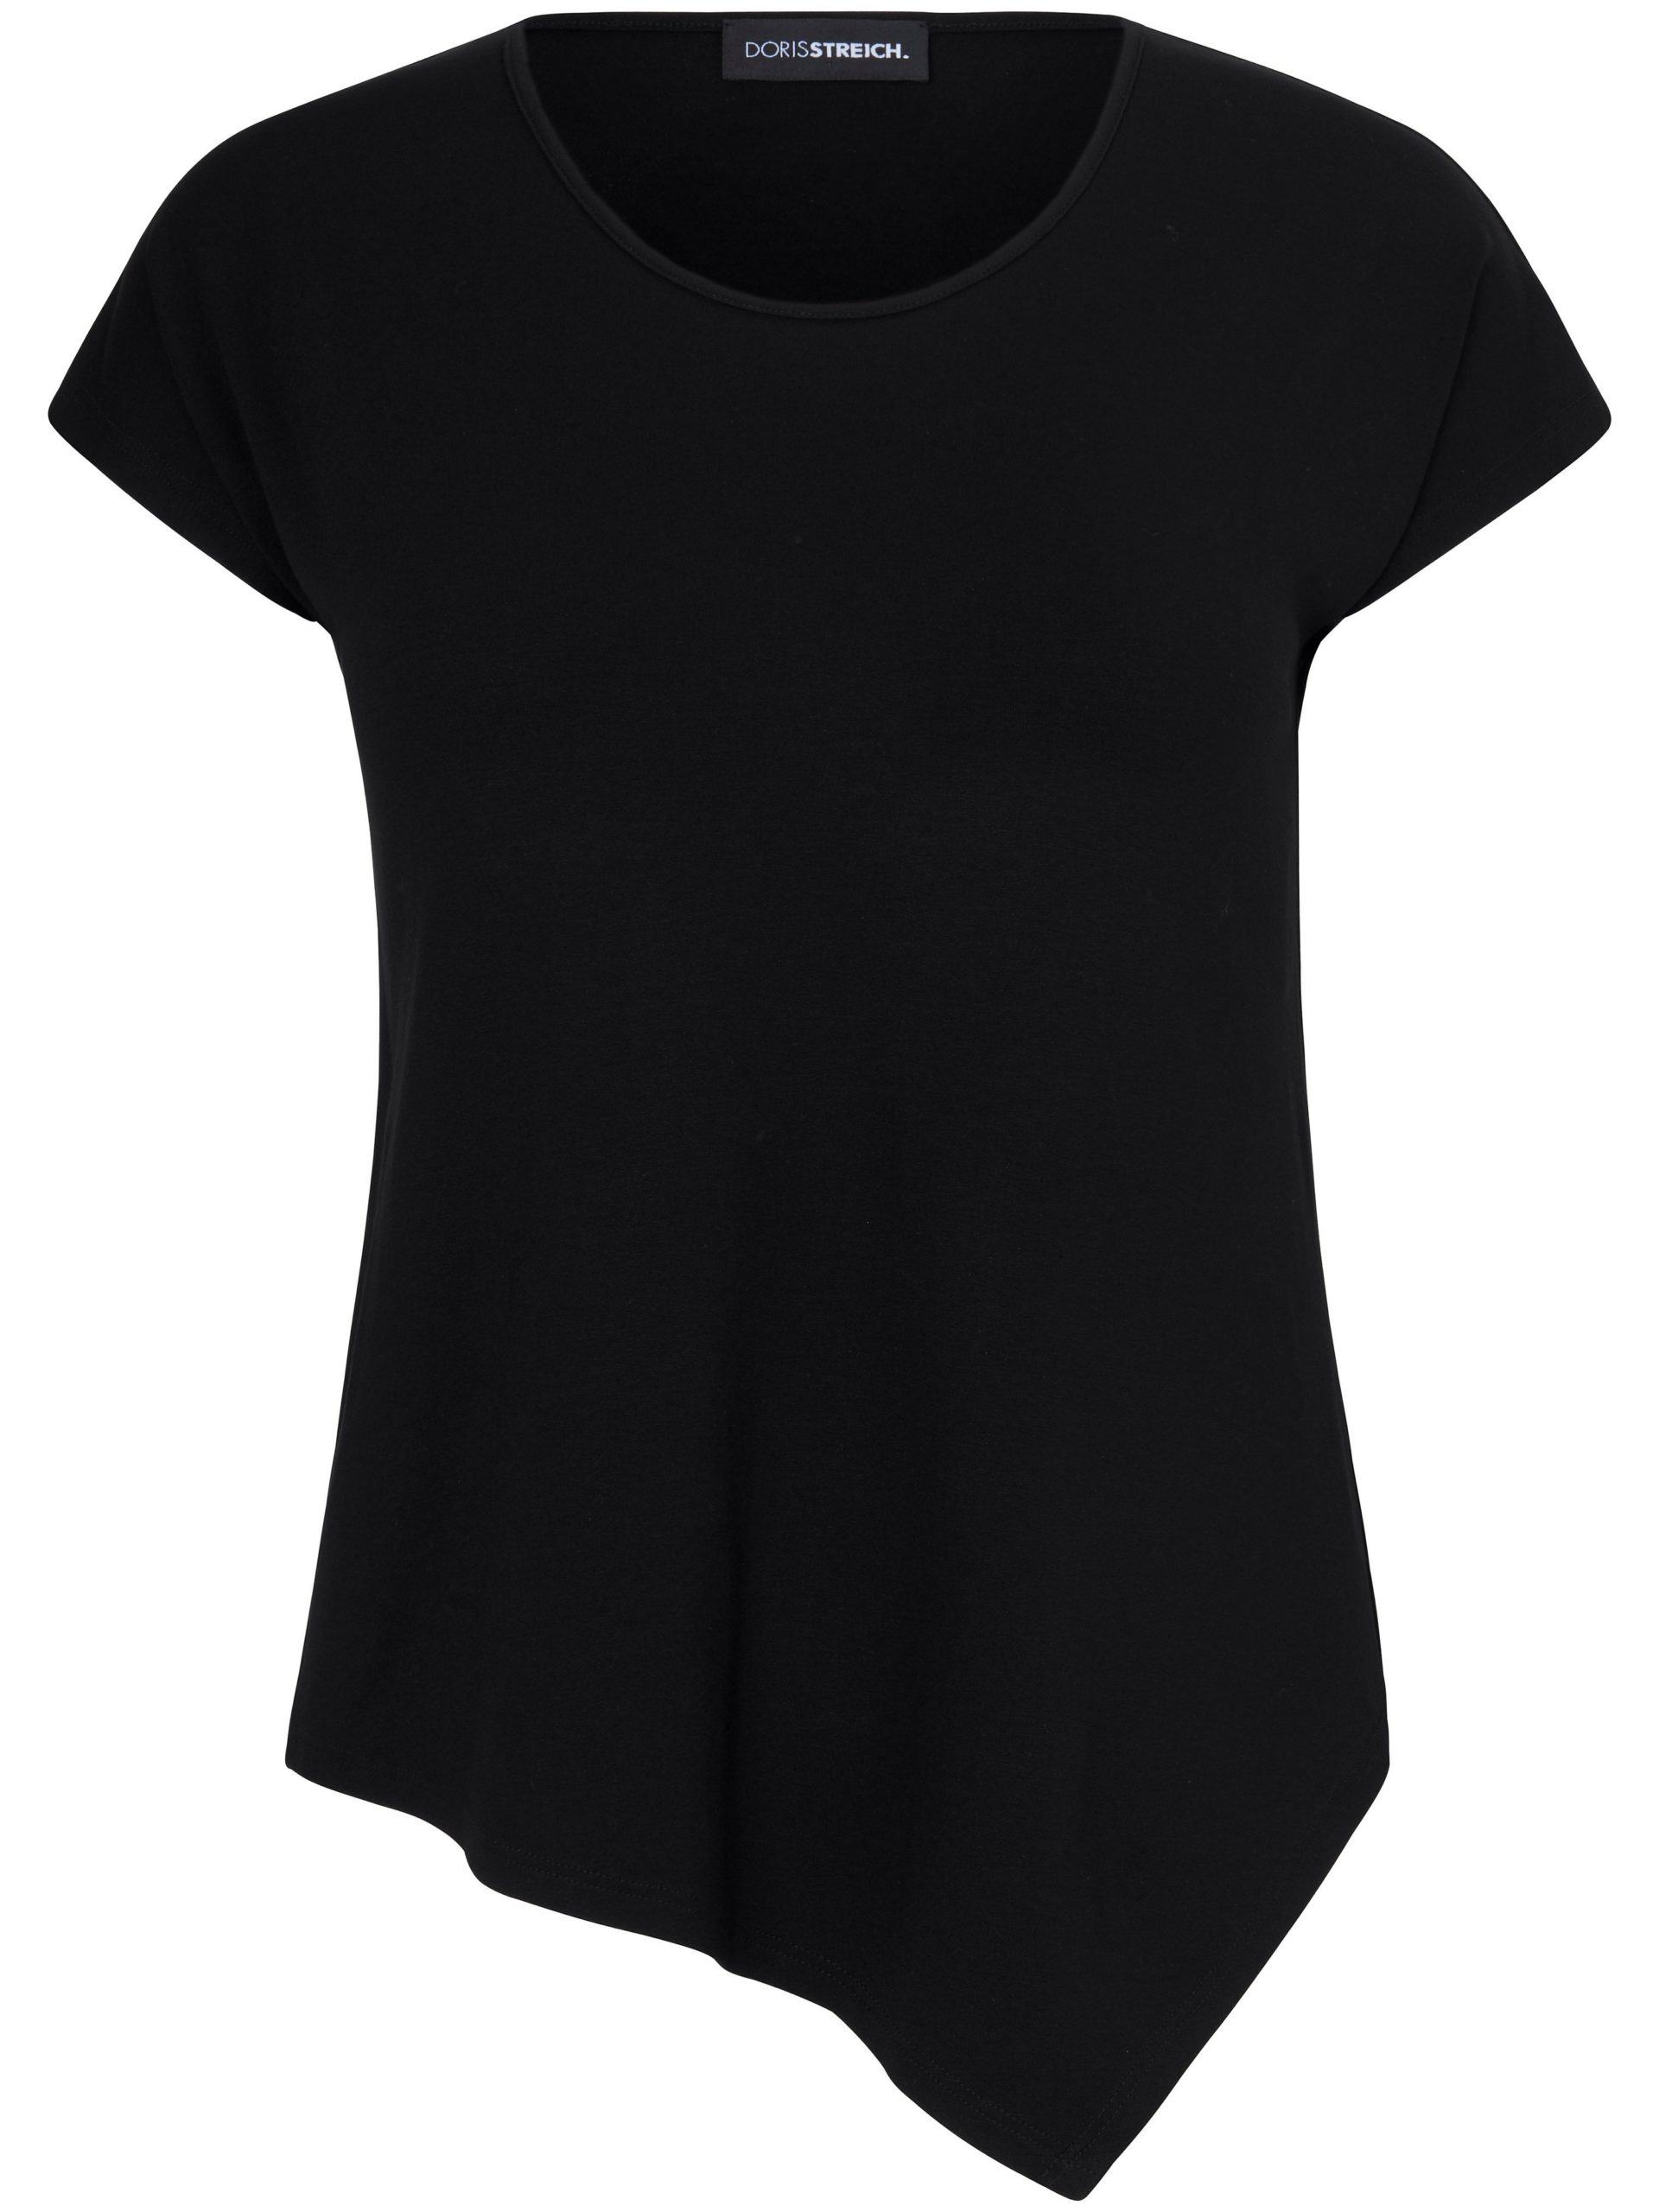 T-shirt met kwartlange mouwtjes en ronde hals Van Doris Streich zwart Kopen